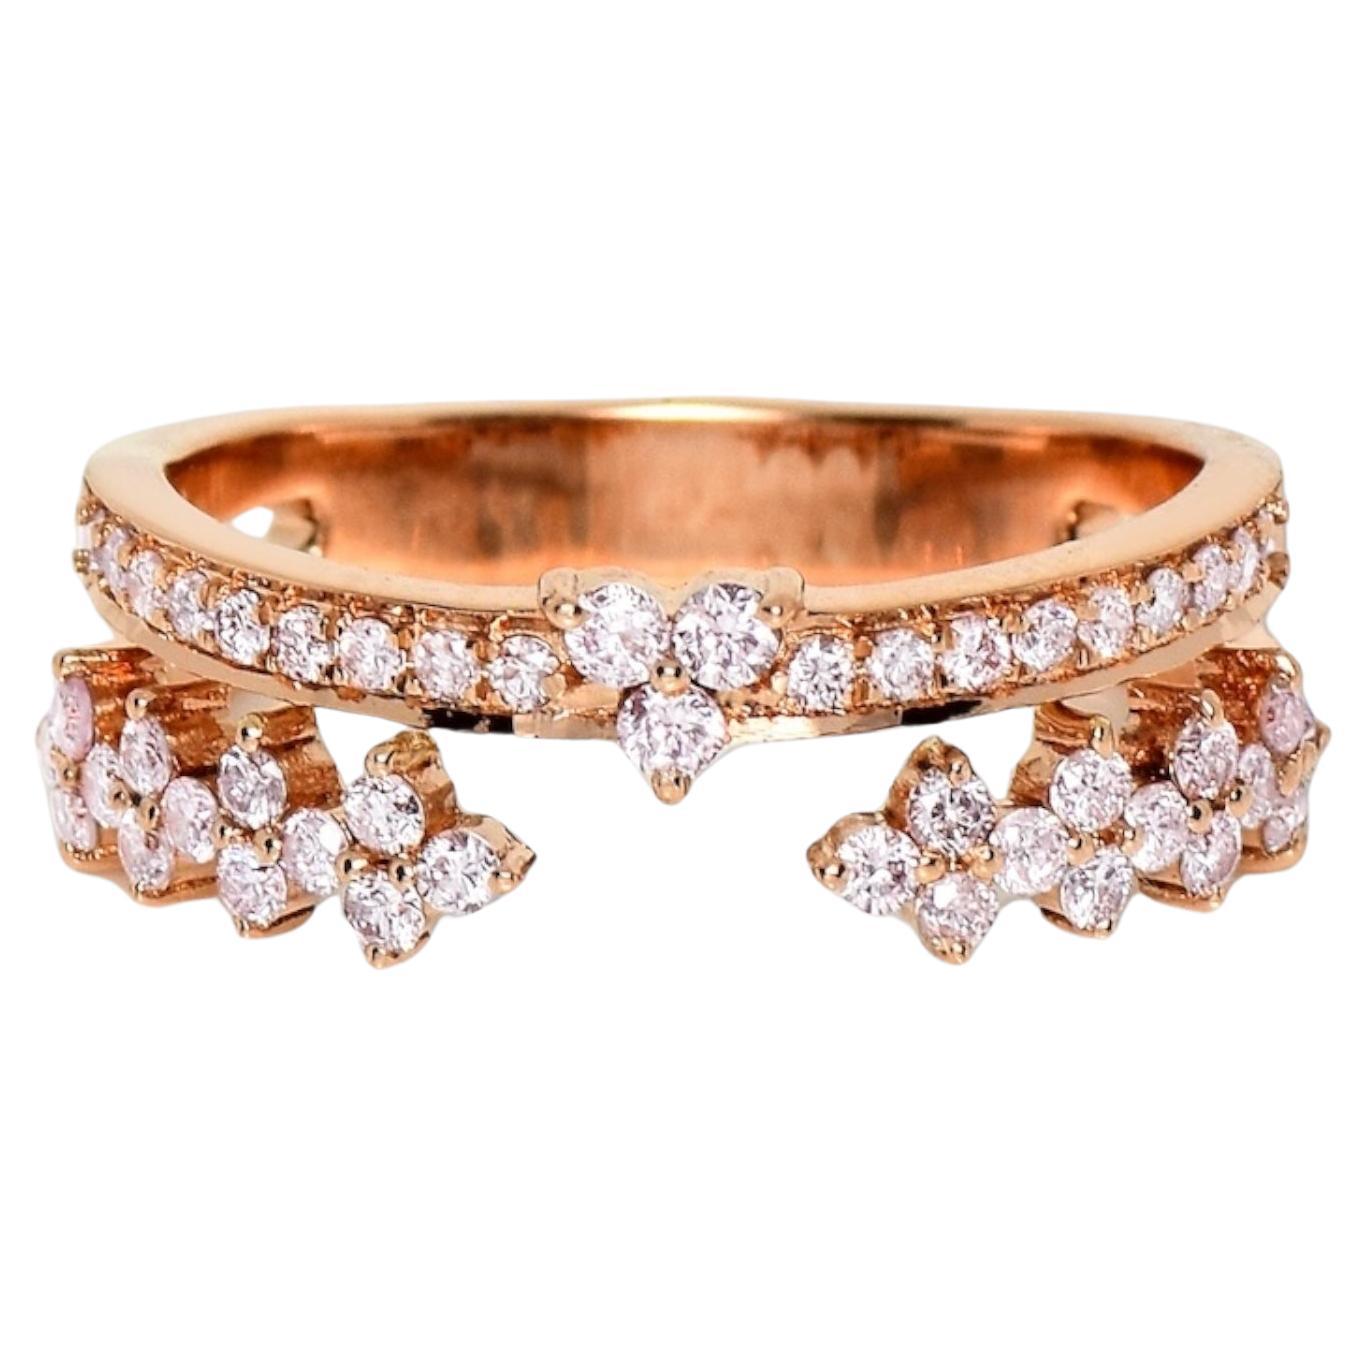 IGI 14K 0.51 ct Natural Pink Diamonds Vintage Crown Design Engagement Ring For Sale